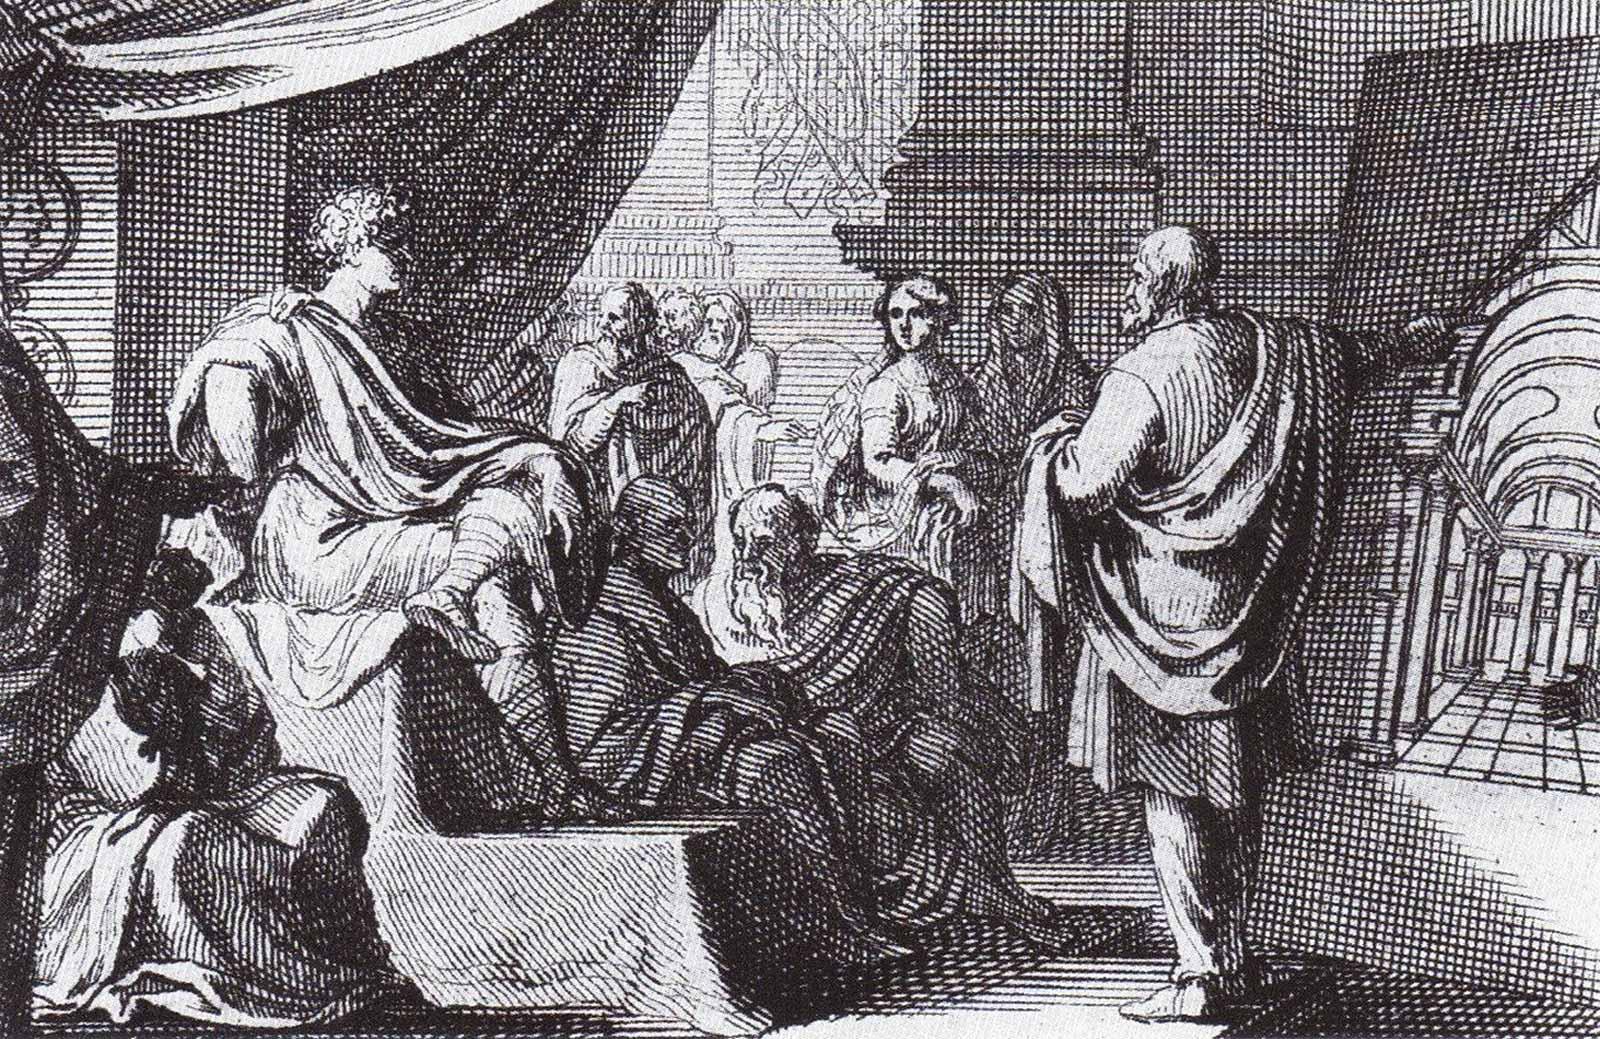 Sebastian Le Clerc, A depiction of Vitruvius presenting De Architectura to Augustus, 1684.